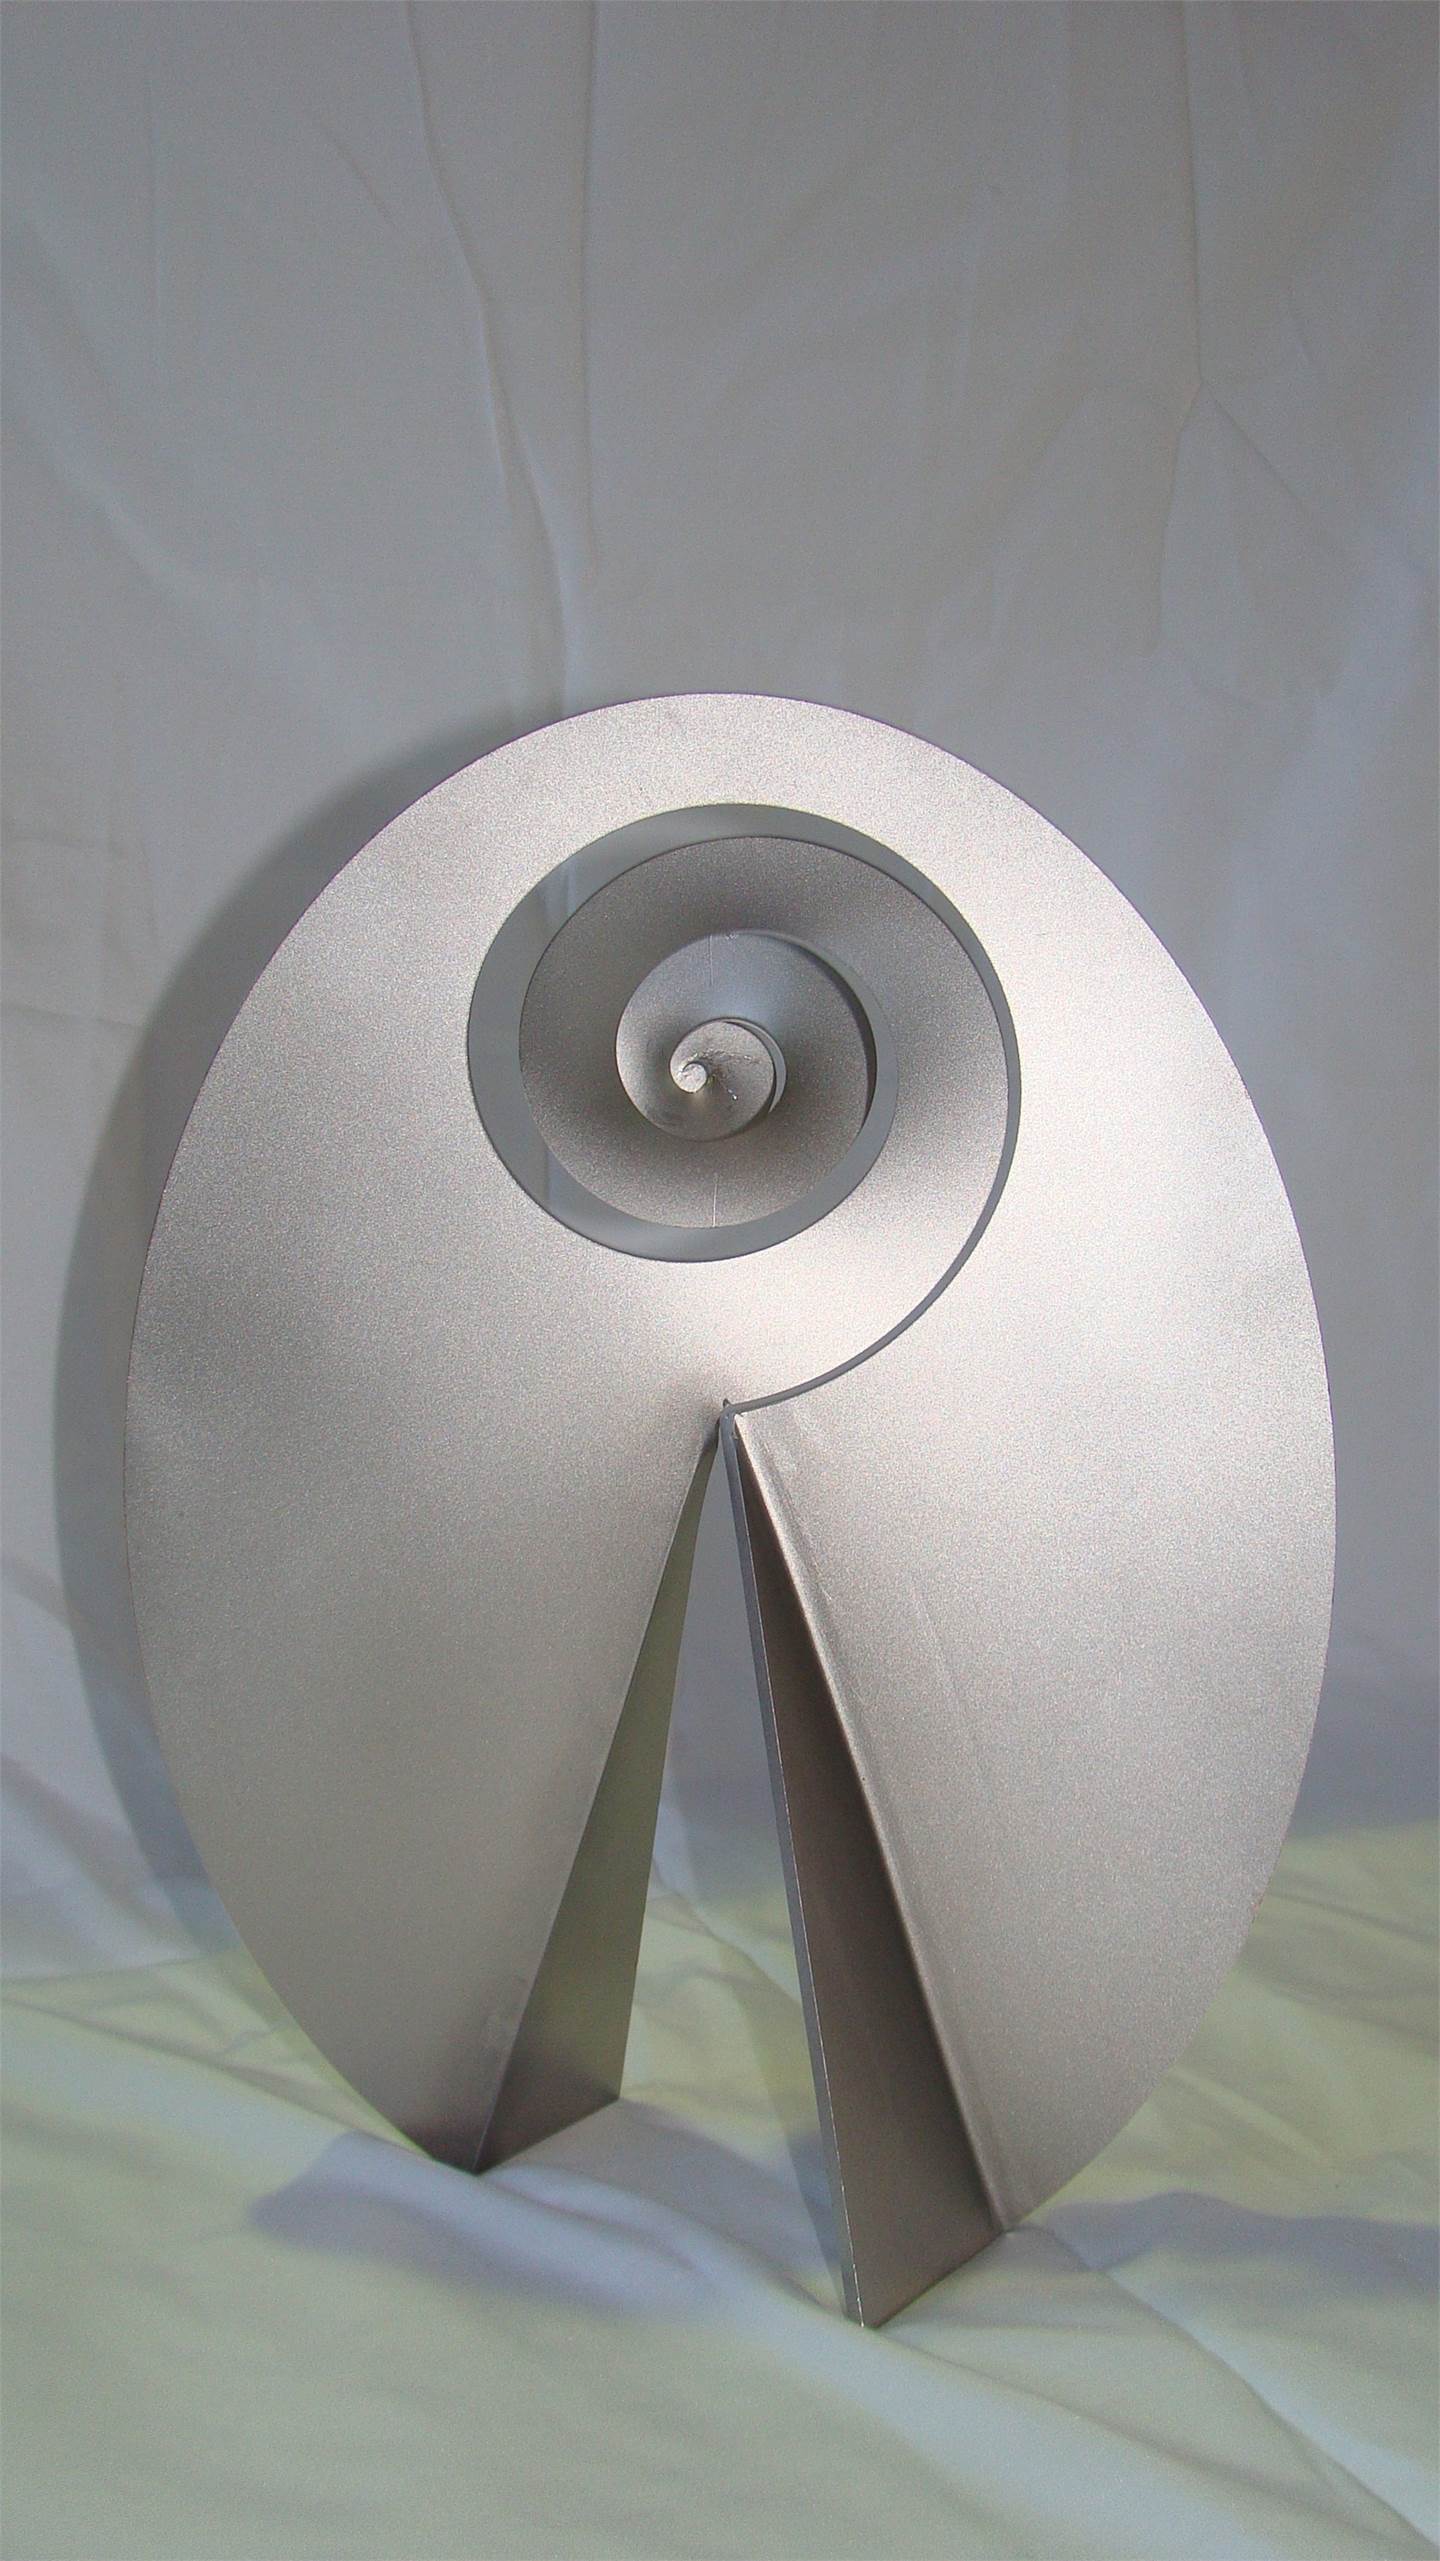 Carrapicho ó vento mareiro (Descomposición del óvalo), original Resumen Metal Escultura de Juan Coruxo